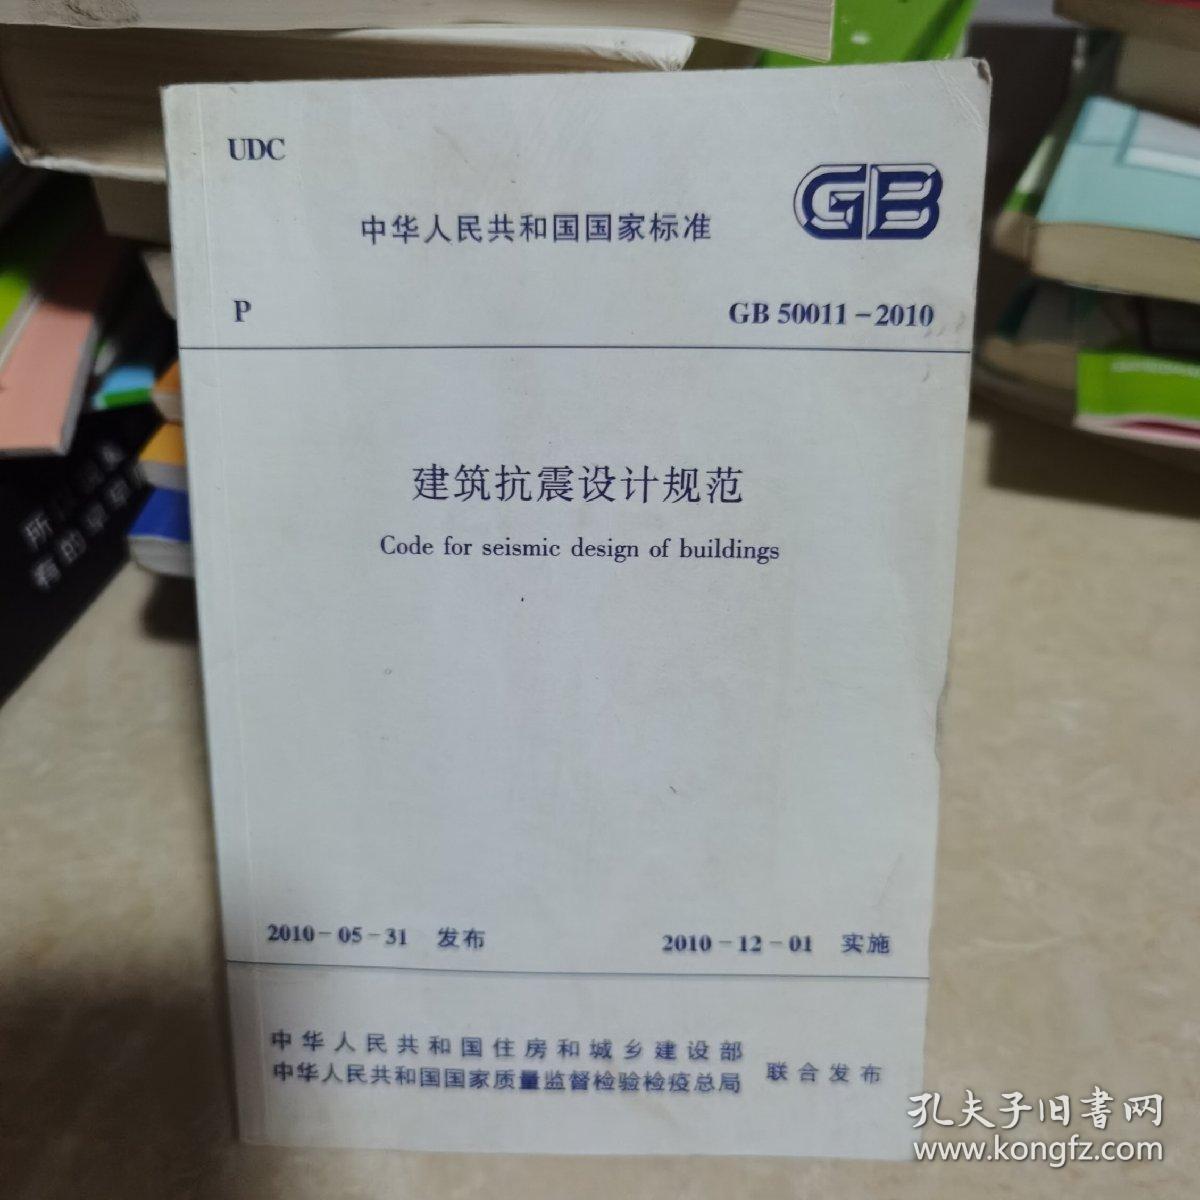 中华人民共和国国家标准GB50011-2010：GB 50011—2010